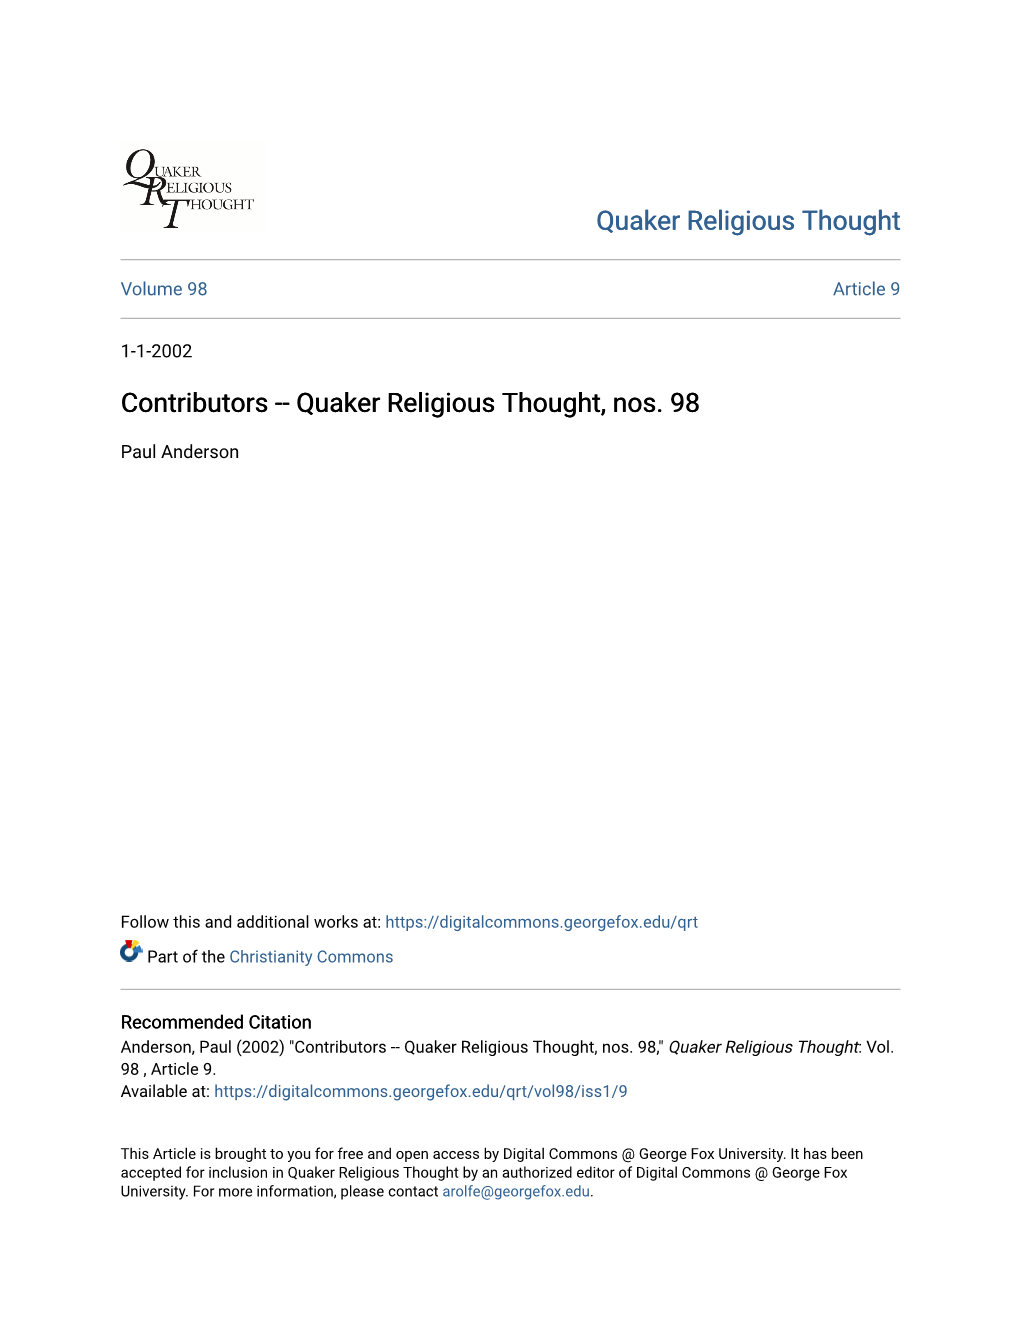 Quaker Religious Thought, Nos. 98